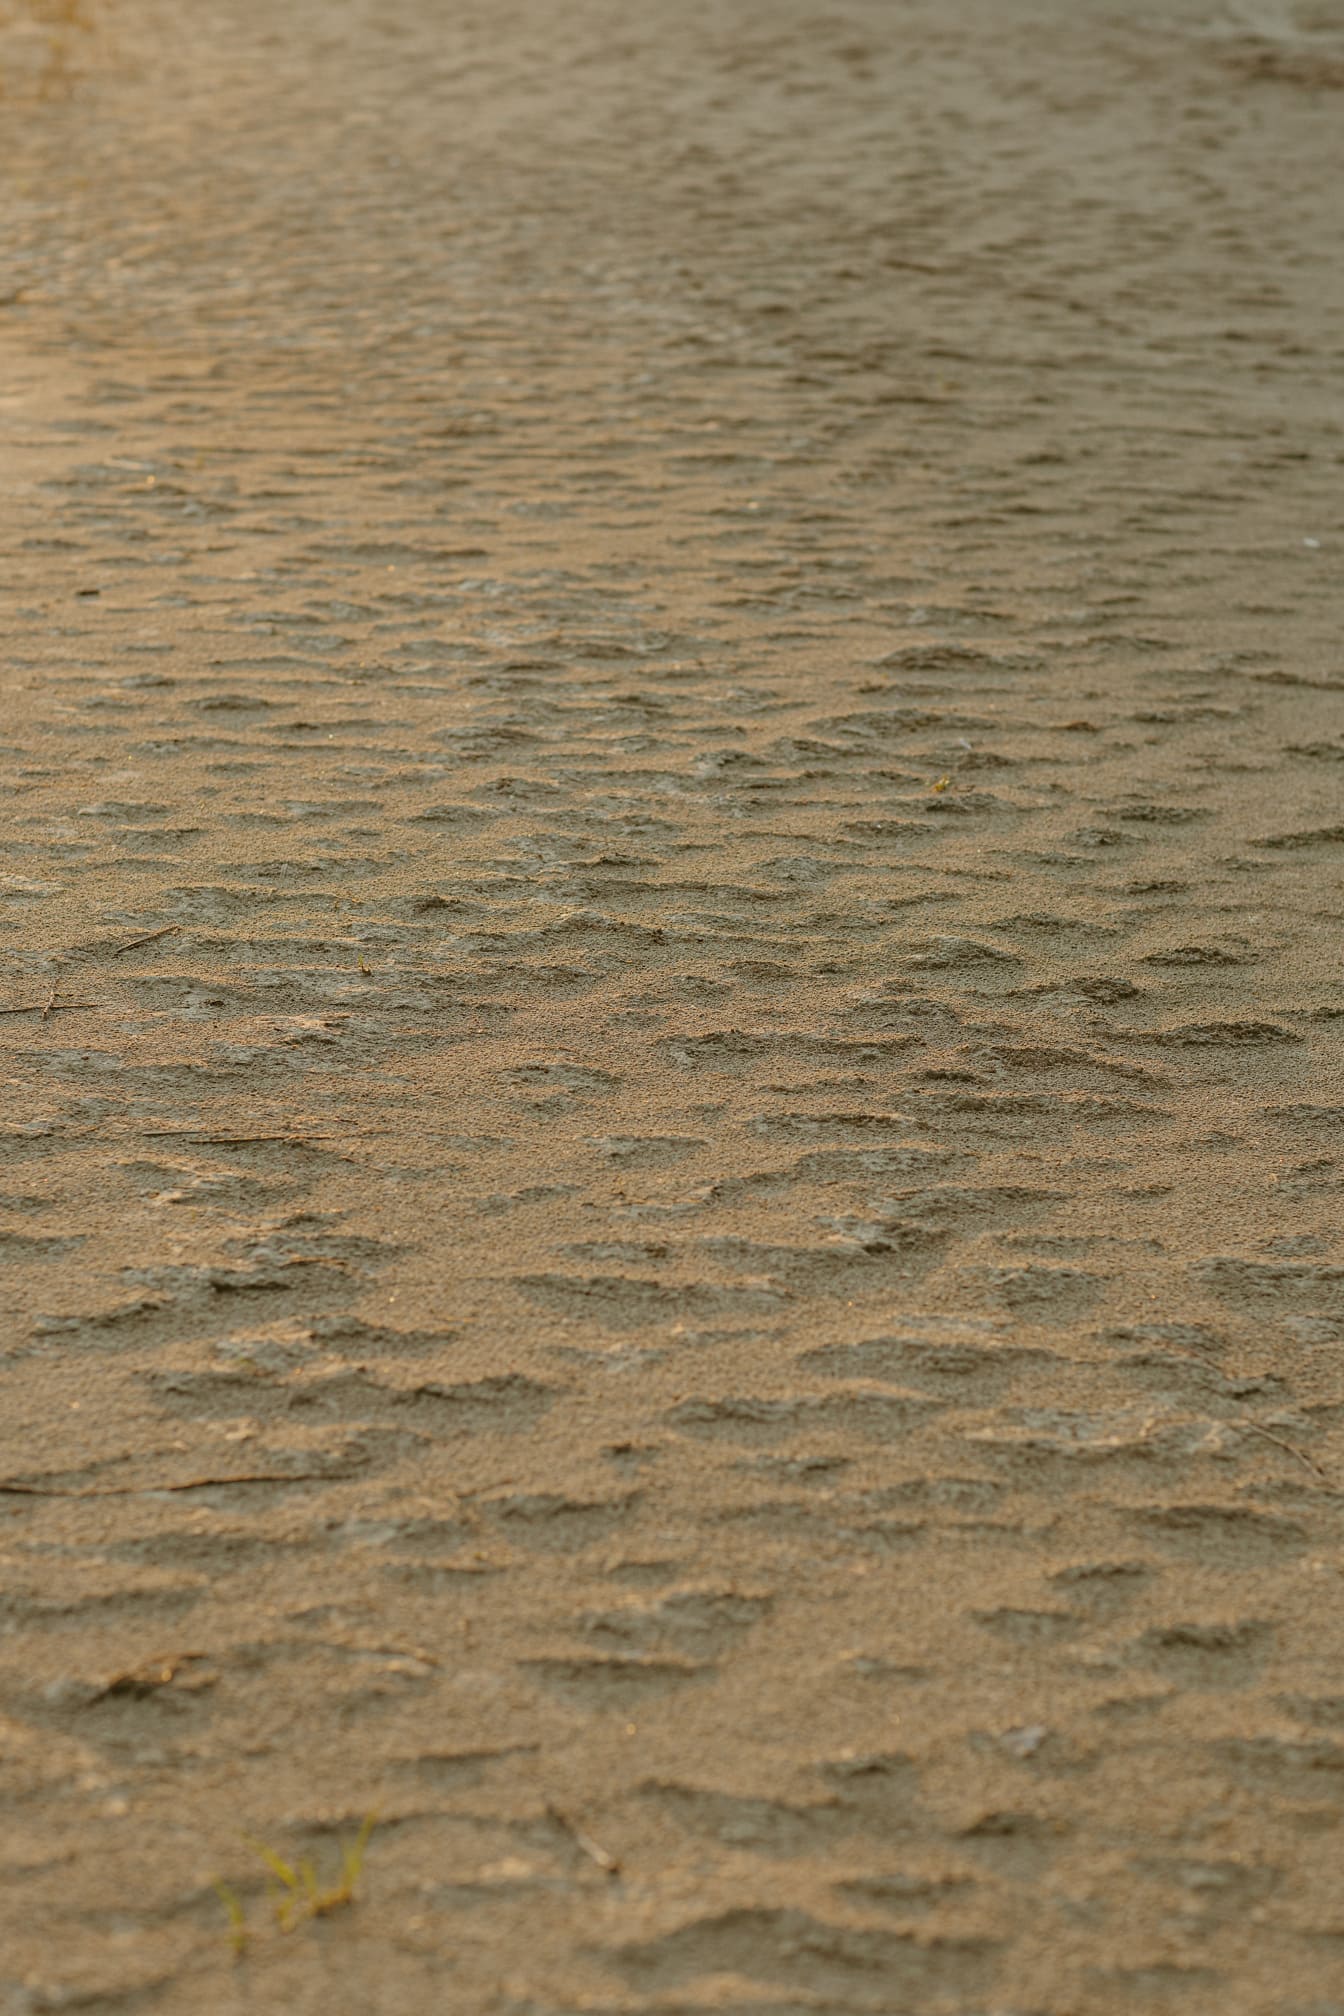 Tekstur af groft lysebrunt sand på jorden